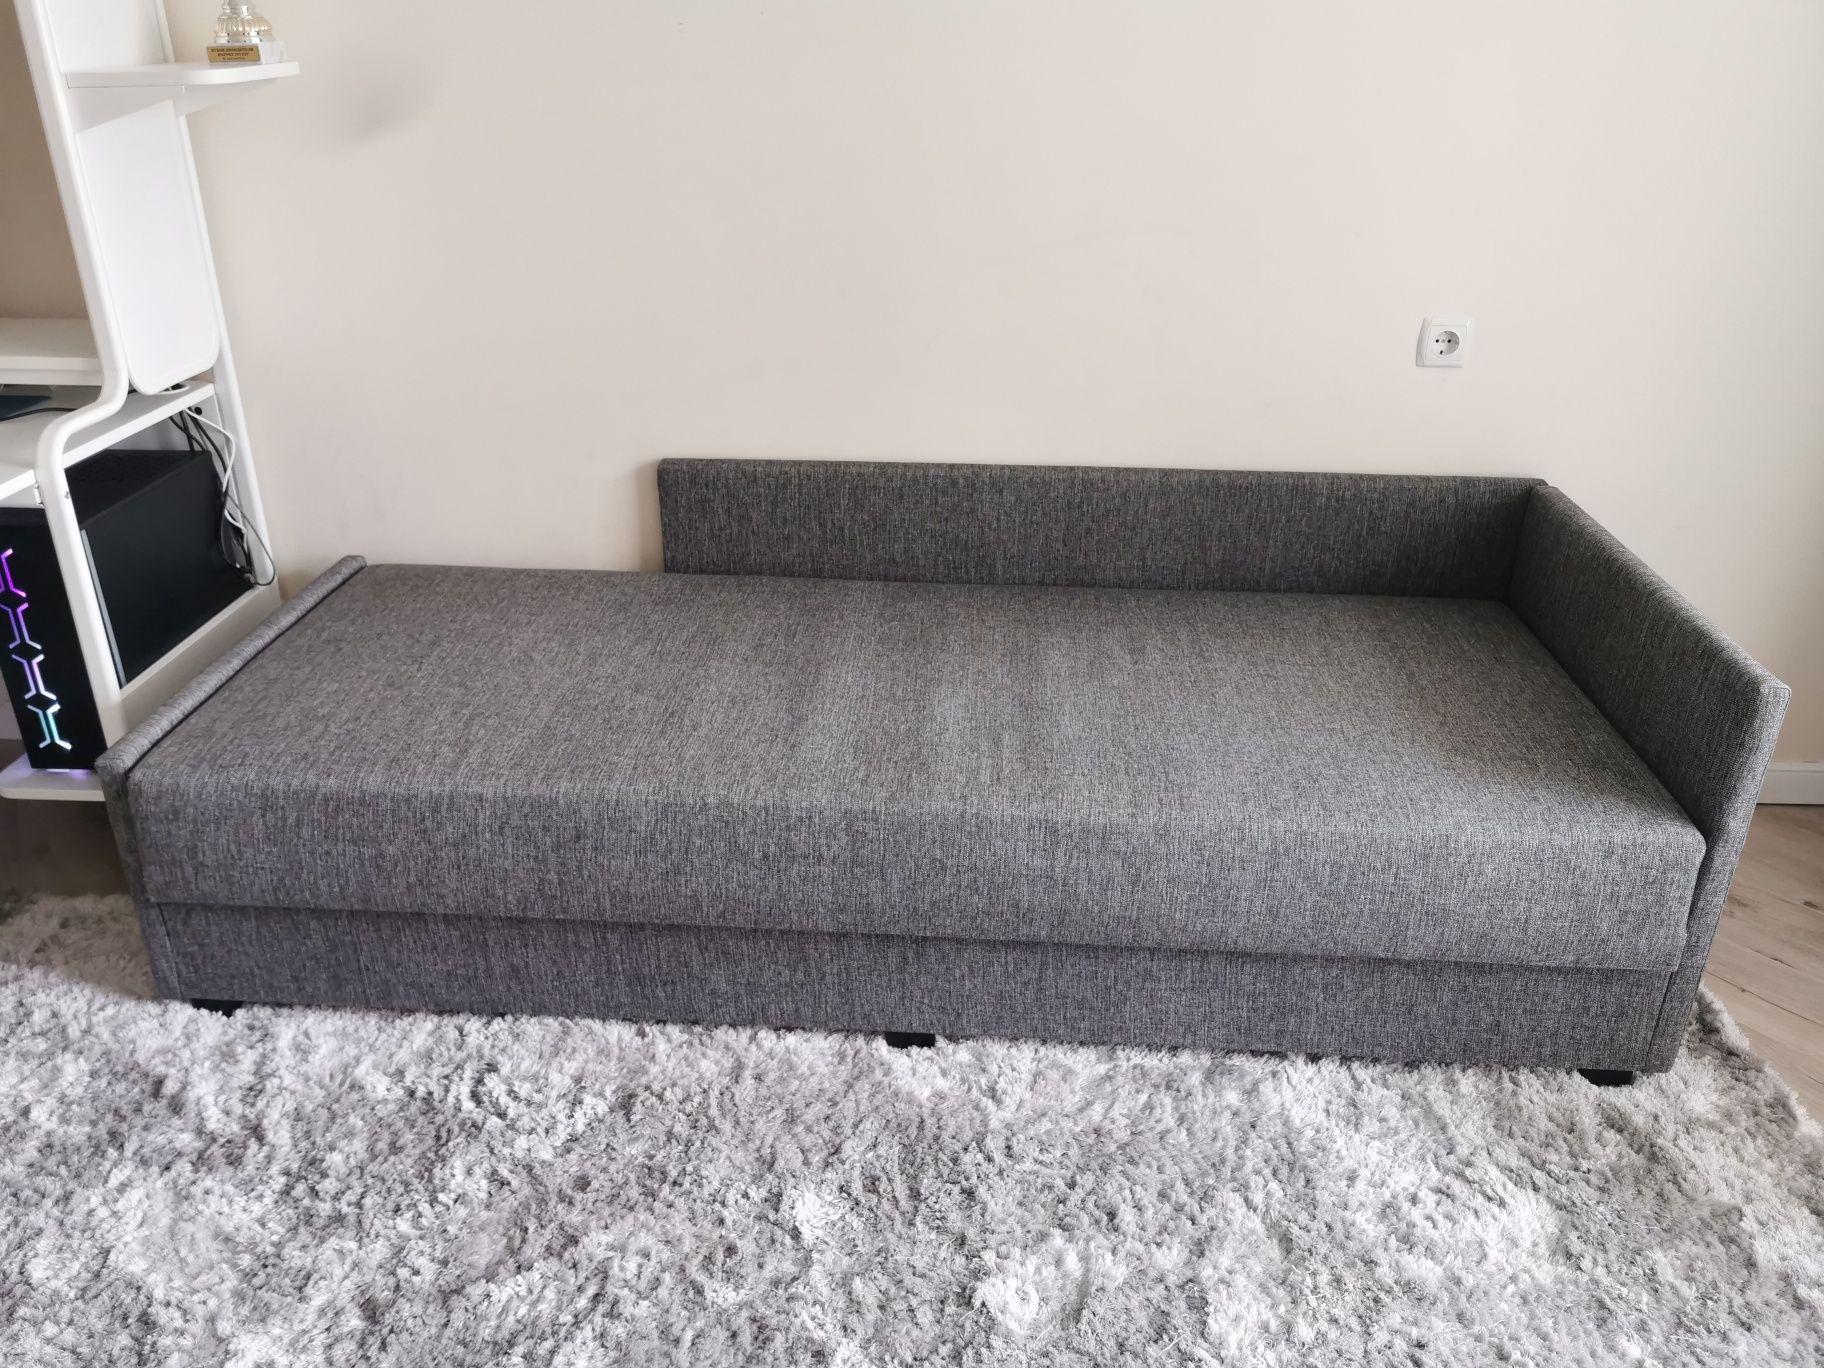 Кровать-кушетка НЭРСНЕС Сандсбру, серый 80x200 см. IKEA